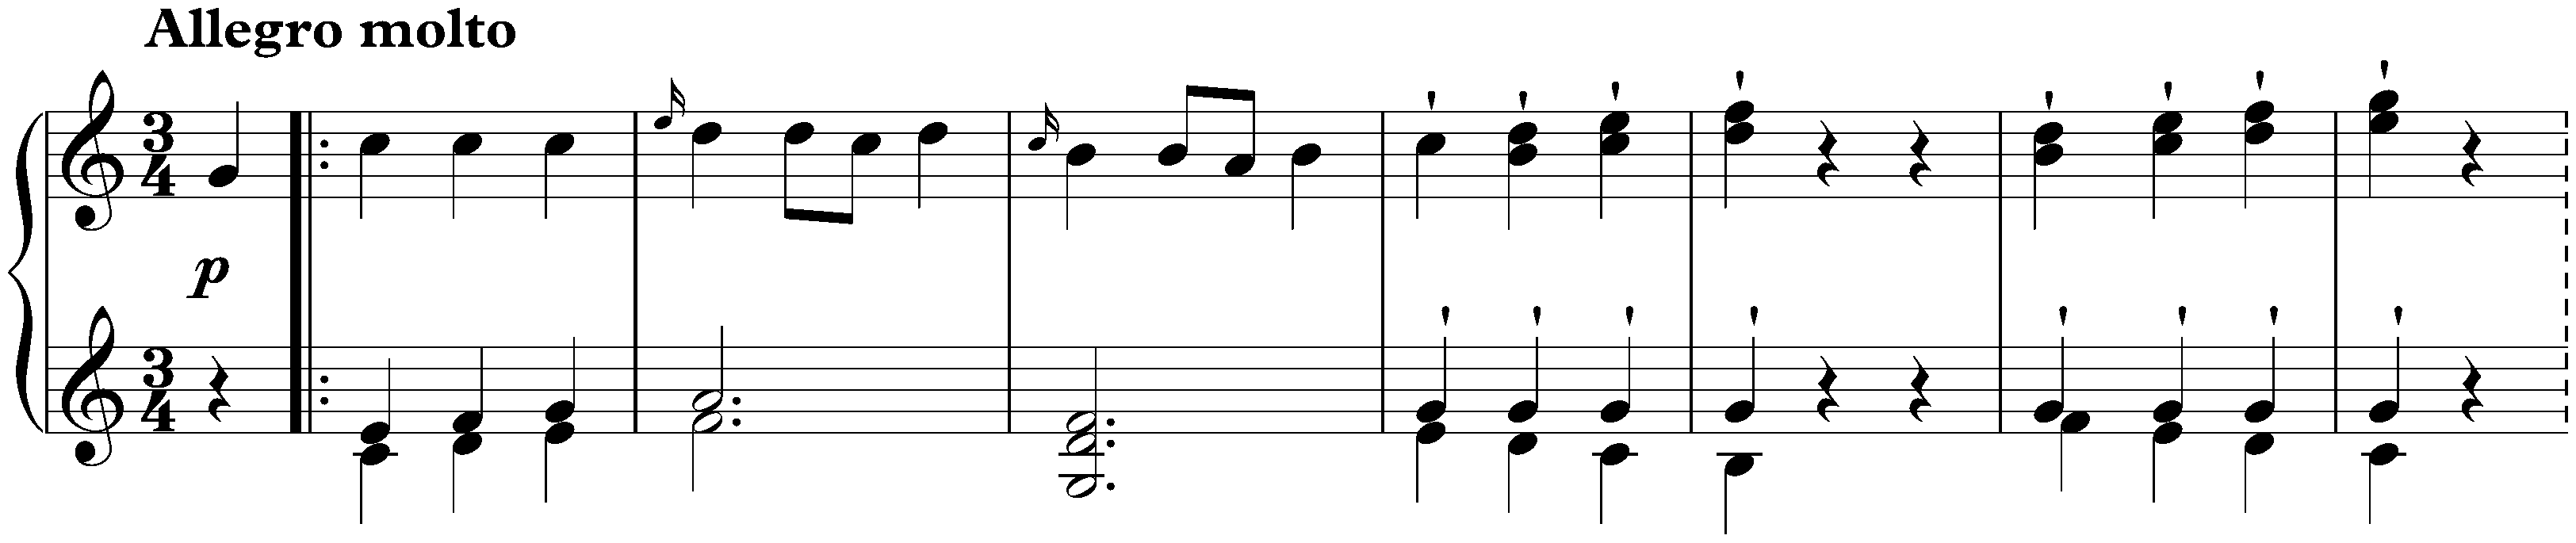 Sonata in C major, Hob. XVI:50; 3. Allegro molto